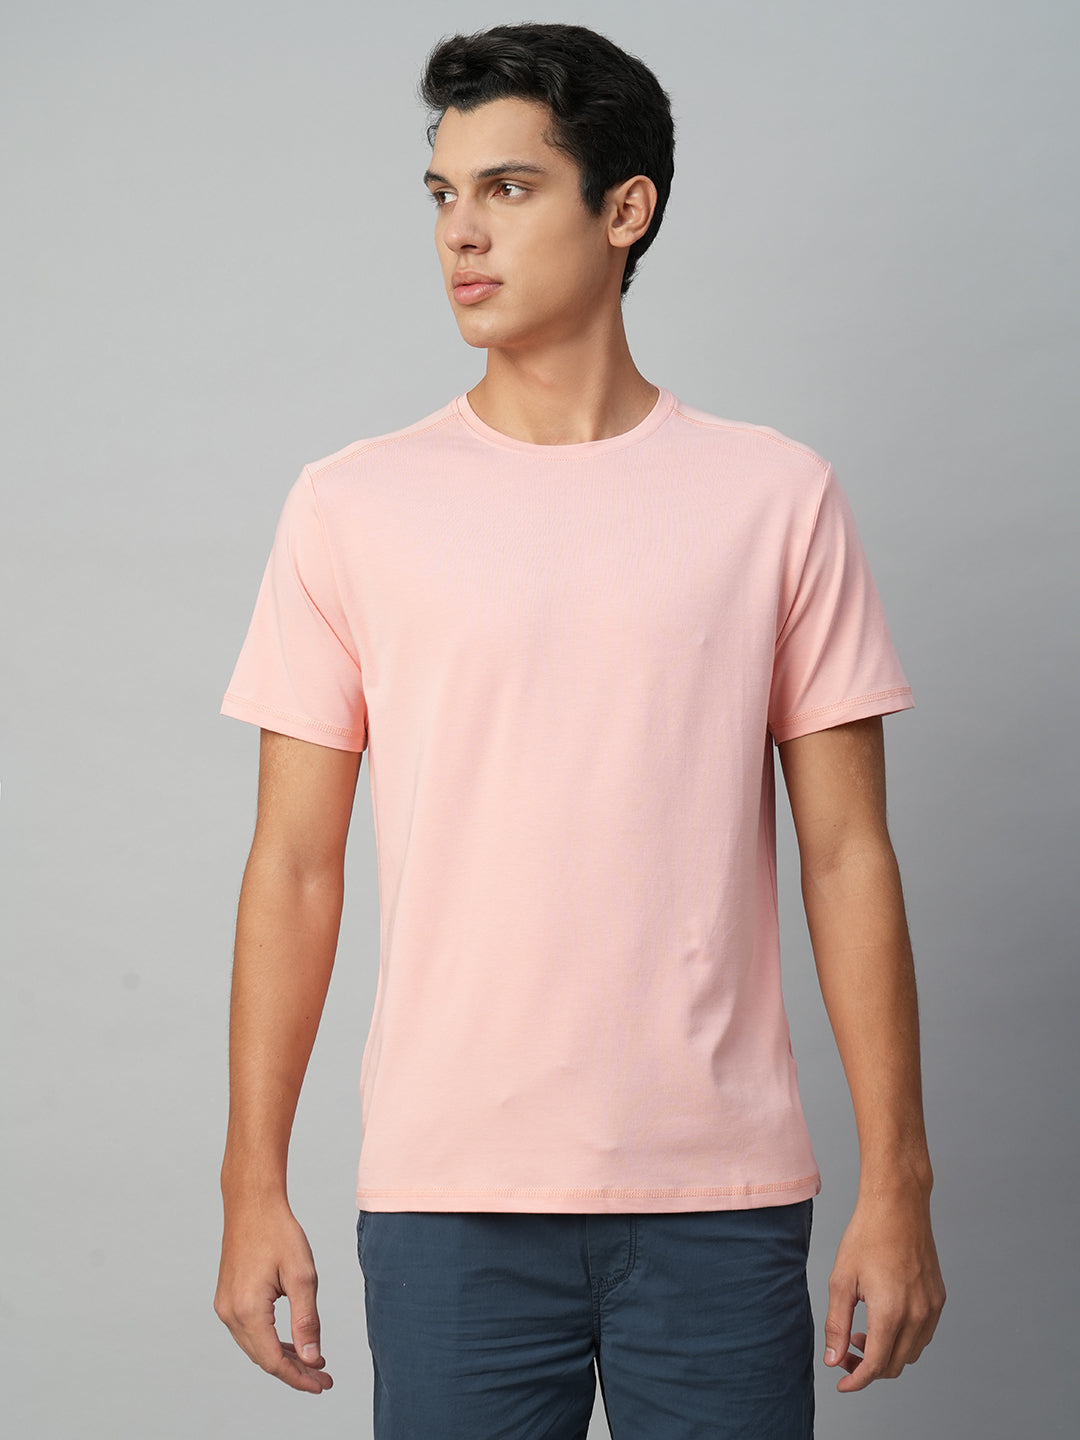 Men's Pink Cotton Bamboo Elastane Regular Fit Tshirt